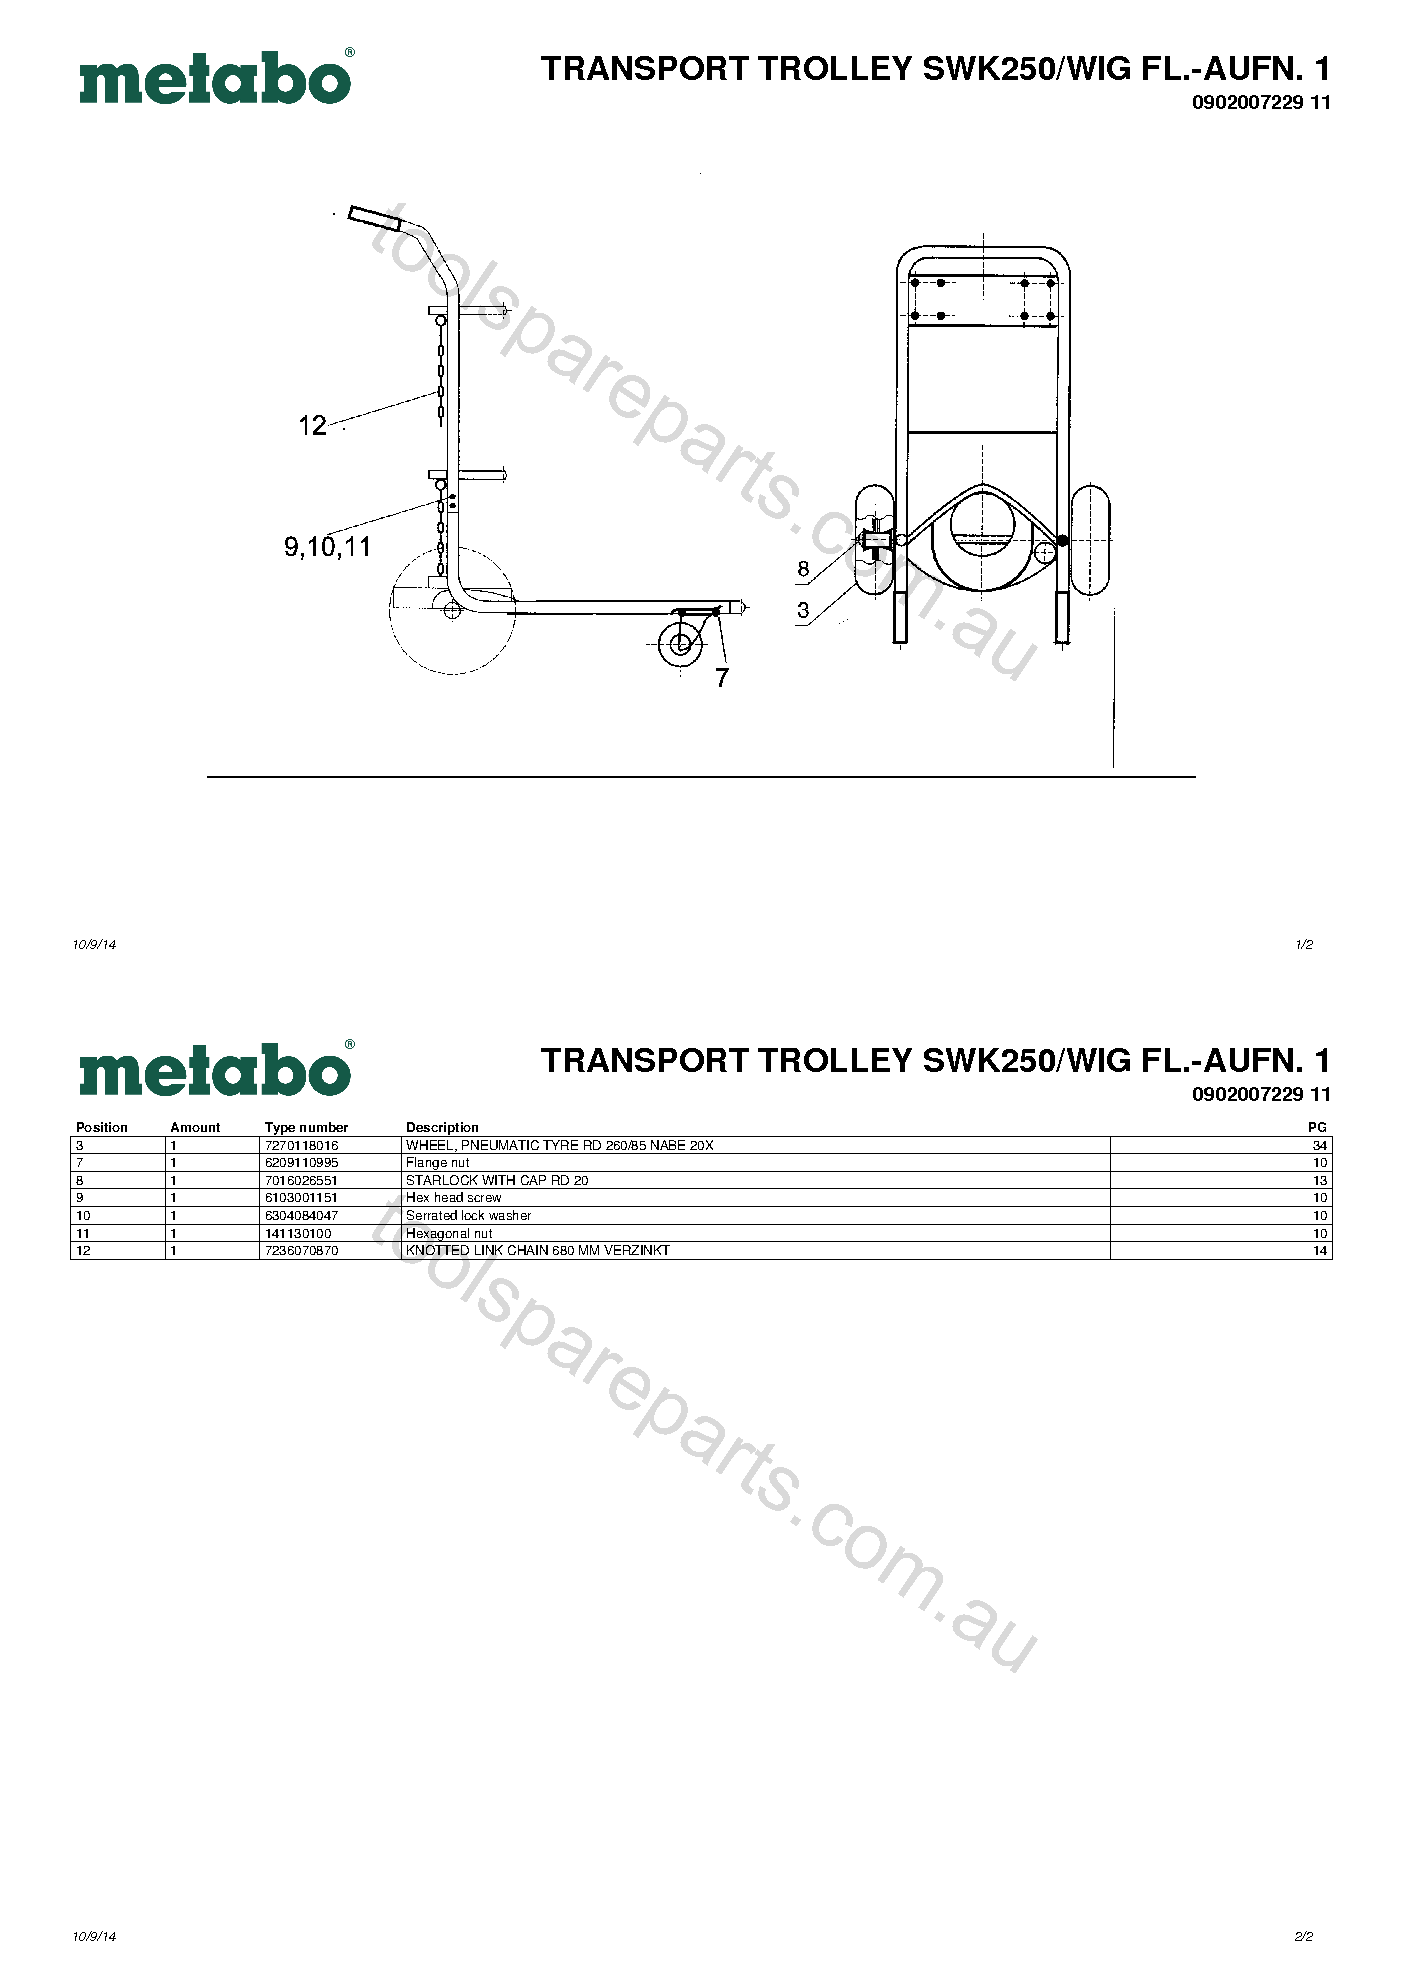 Metabo TRANSPORT TROLLEY SWK250/WIG FL.-AUFN. 1 0902007229 11  Diagram 1